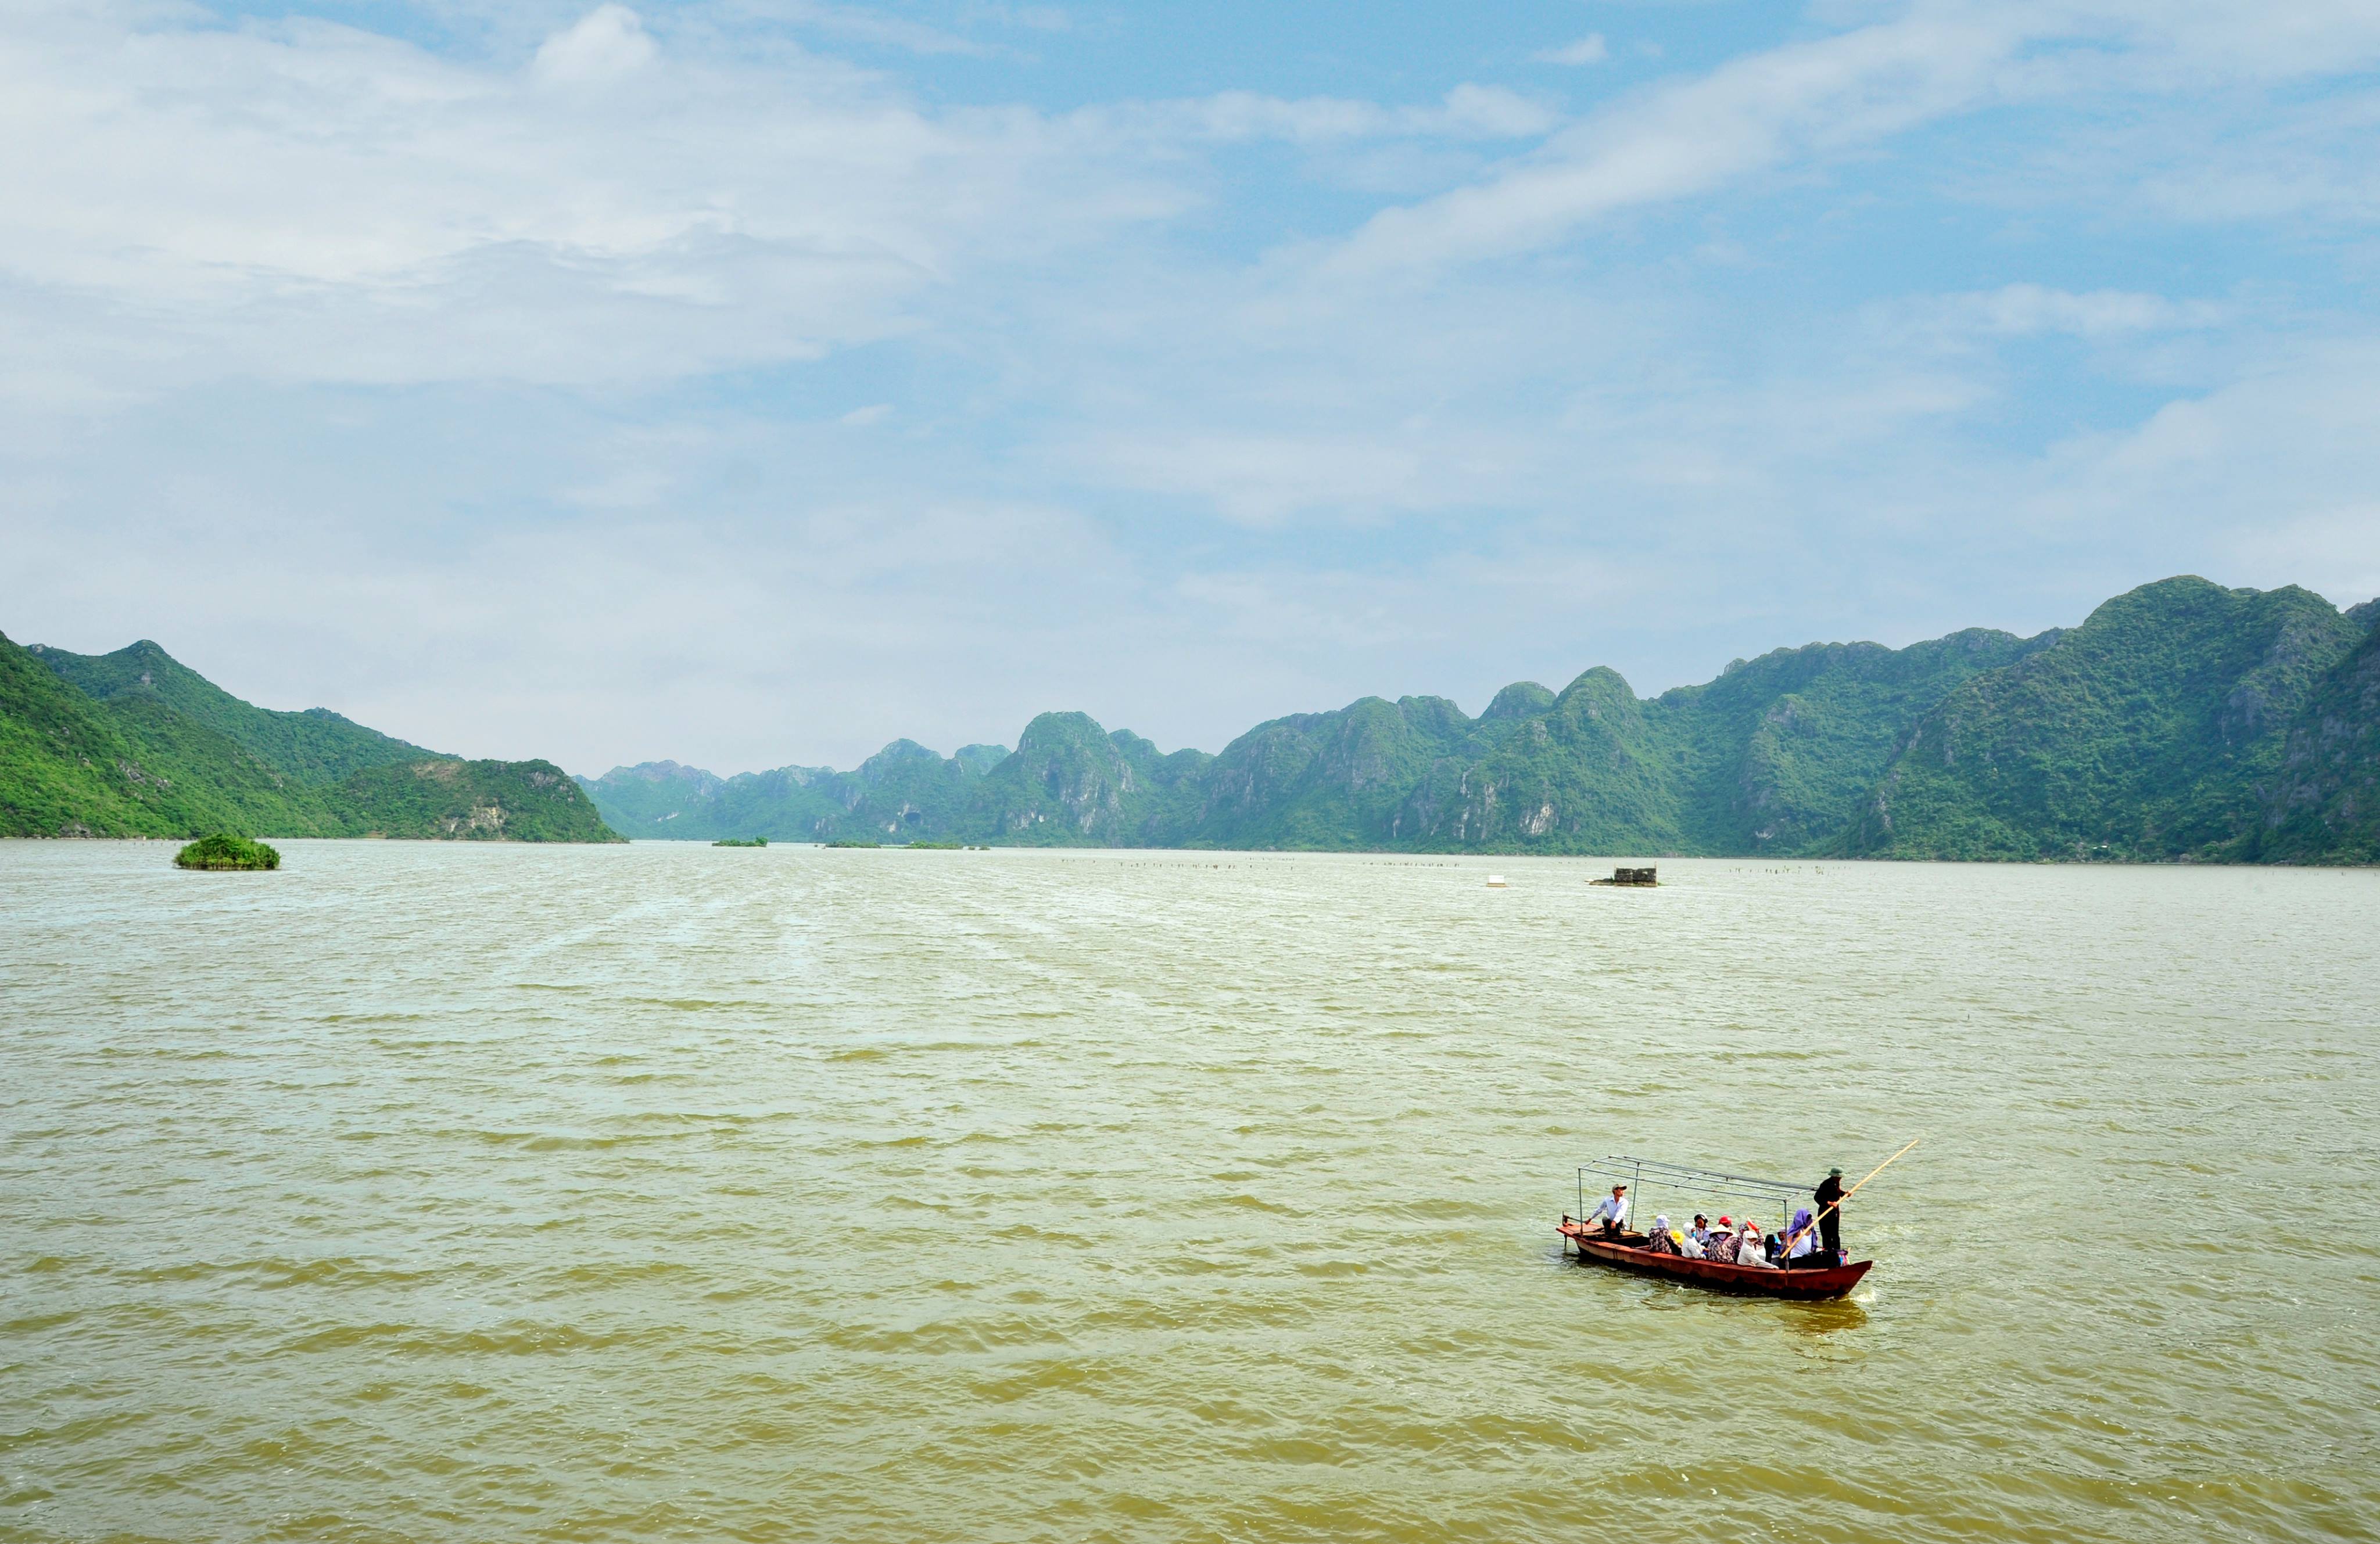 Khu du lịch sinh thái hồ Đồng Thái – điểm đến lý tưởng cho những ngày nghỉ cuối tuần